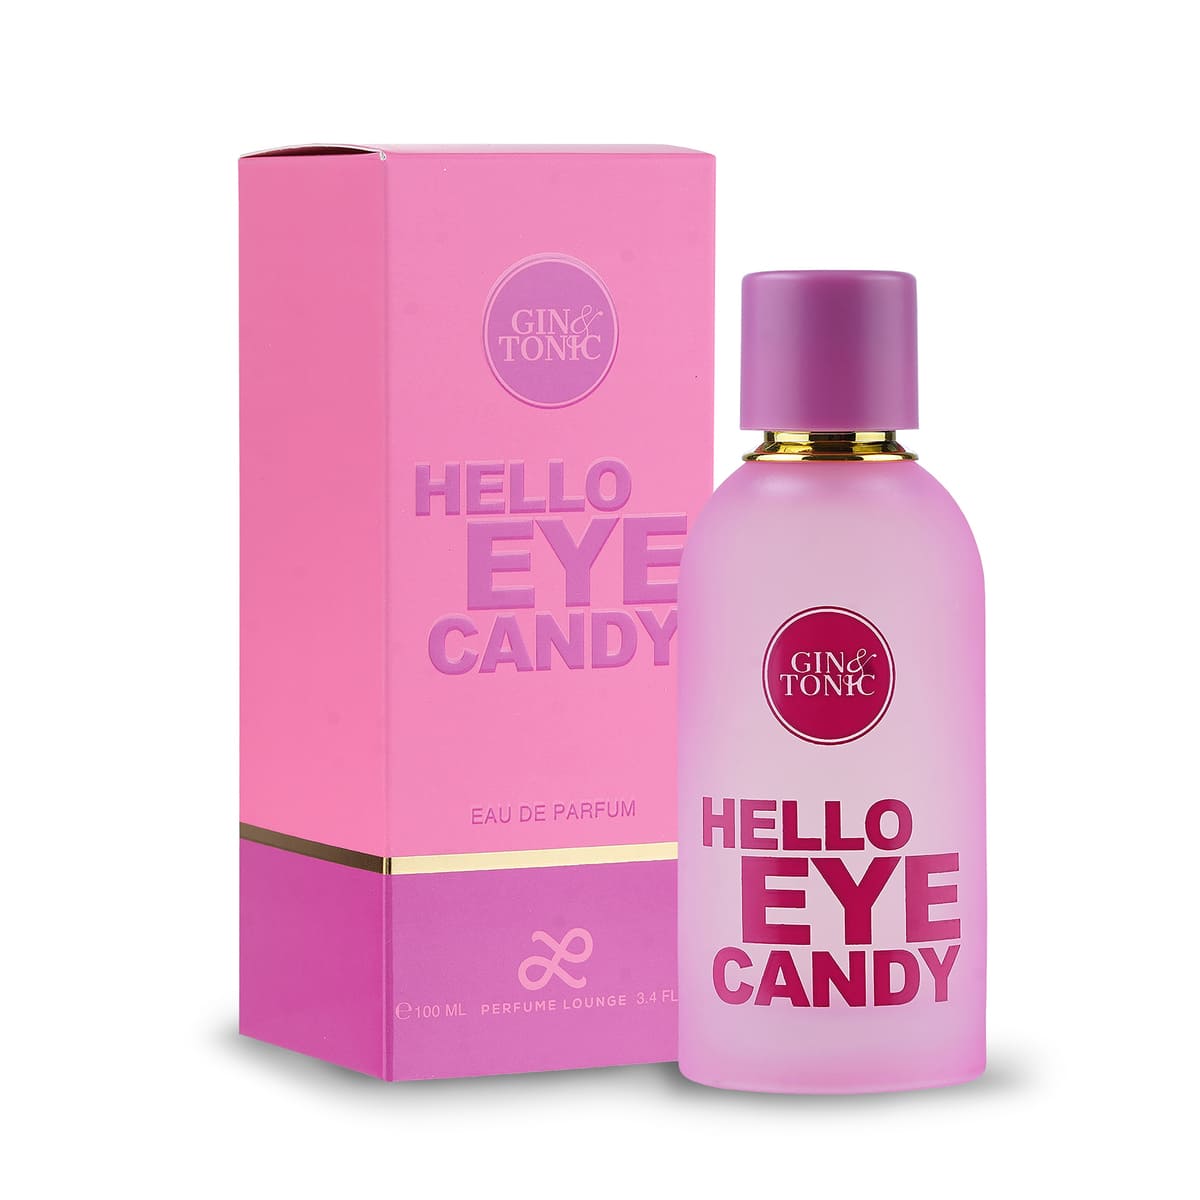 Gin & Tonic Hello Eye Candy Perfume for Women 100ml